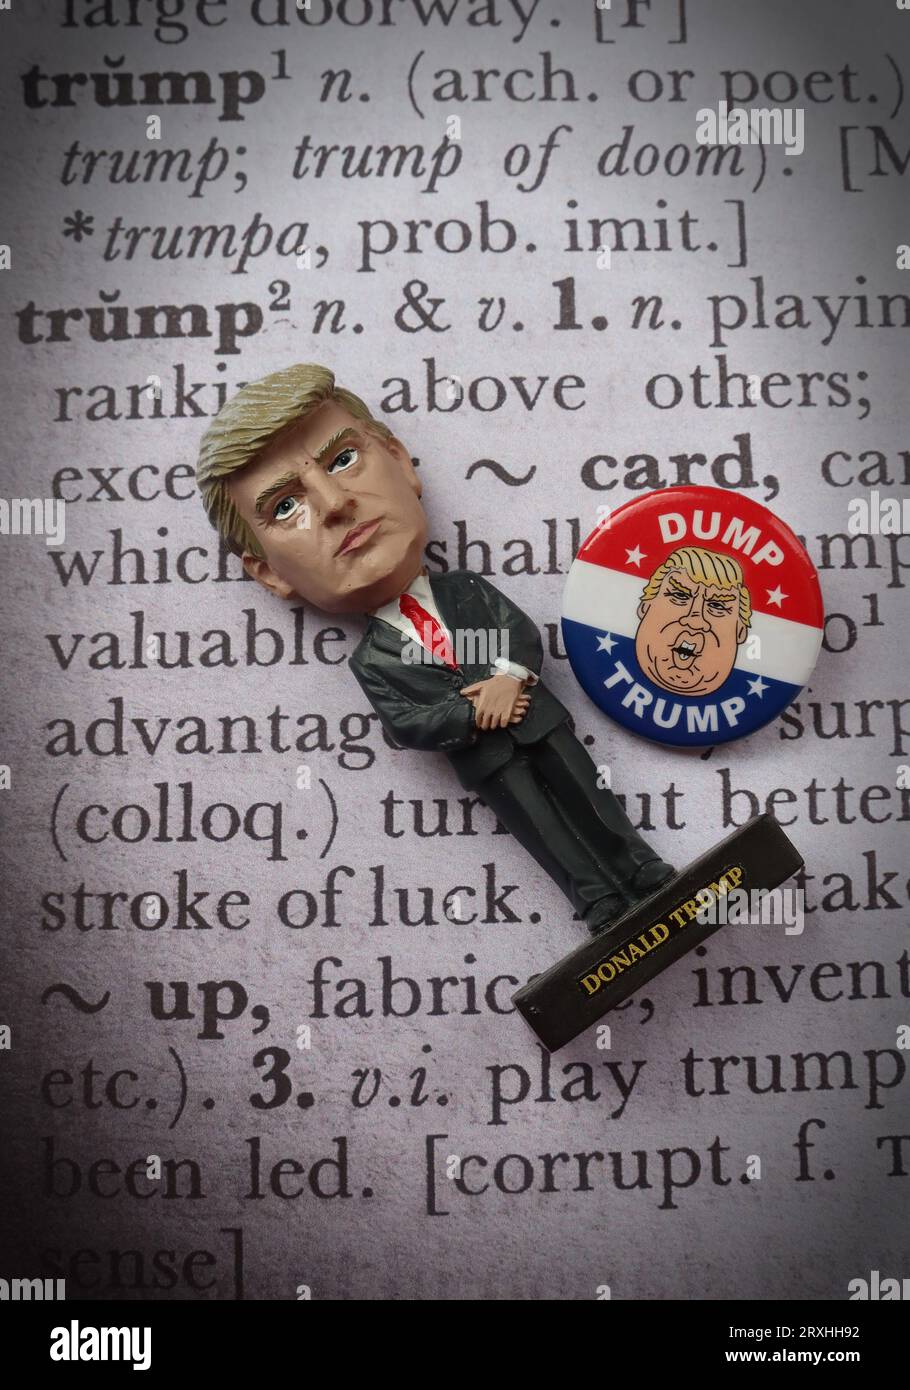 Dump Trump - élection présidentielle républicaine de 2024 USA, définition du dictionnaire Banque D'Images